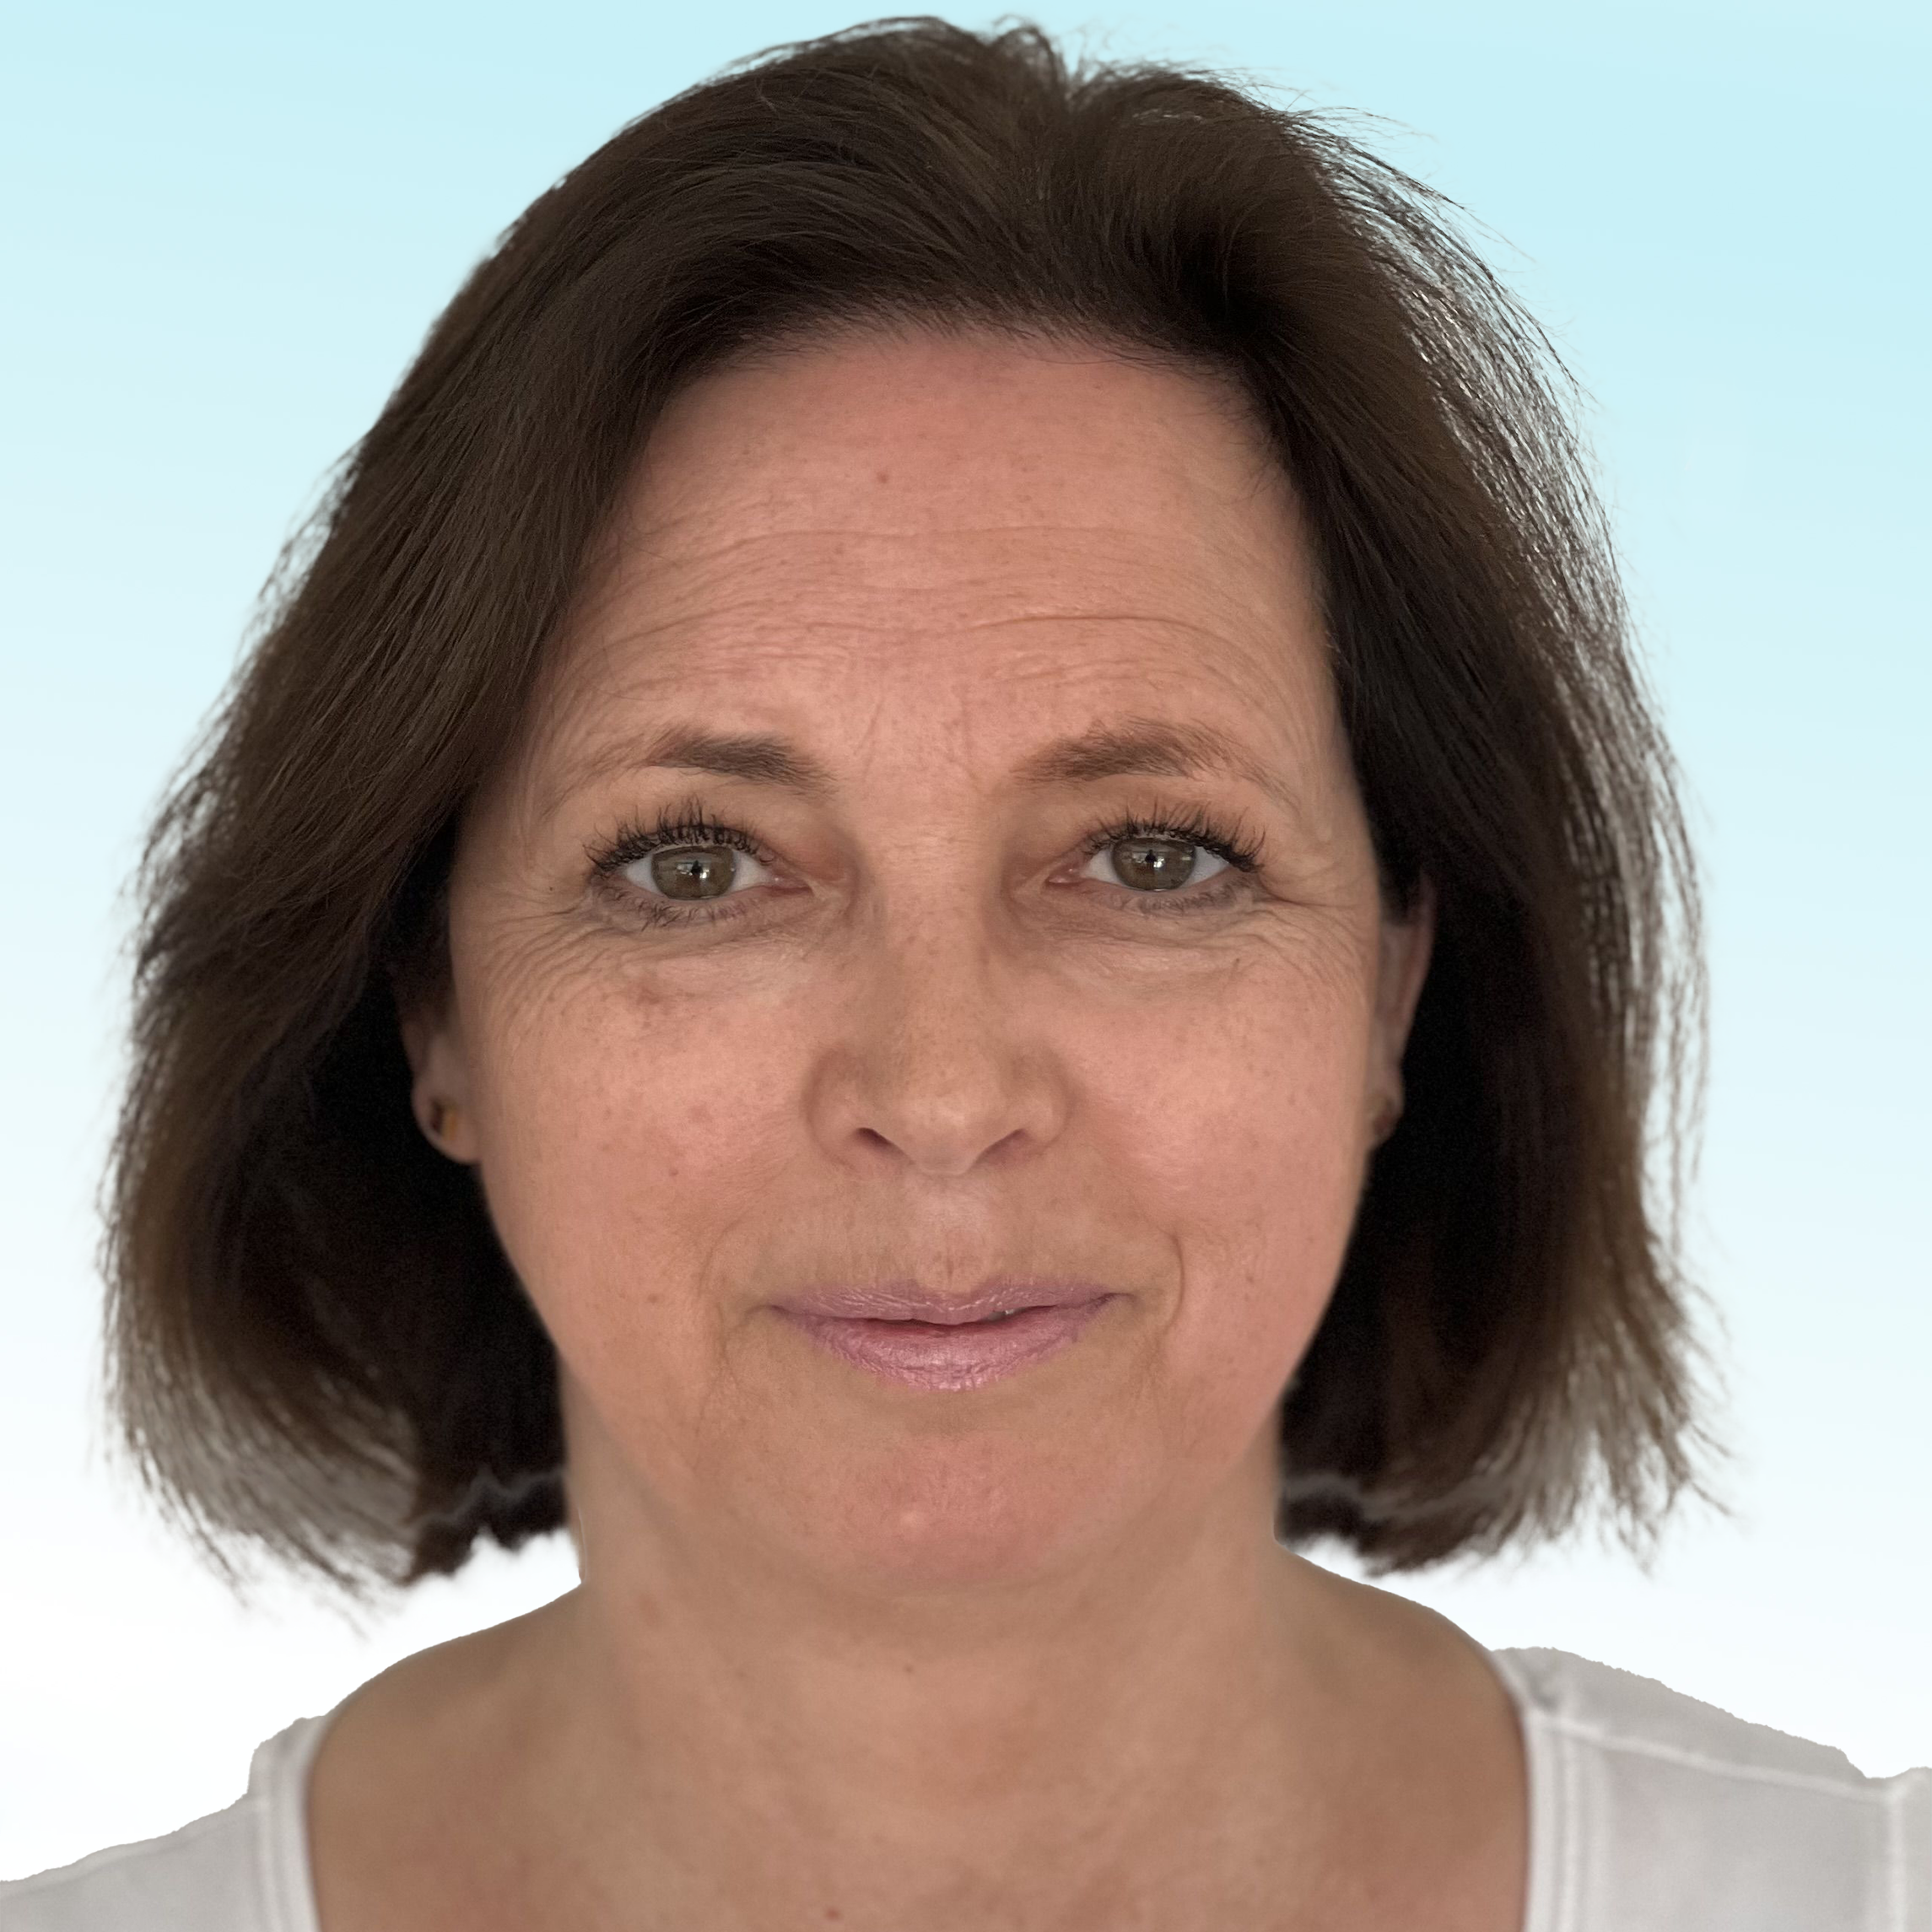 Dermatologist, Dr. med. Anne-Katharina Sonntag